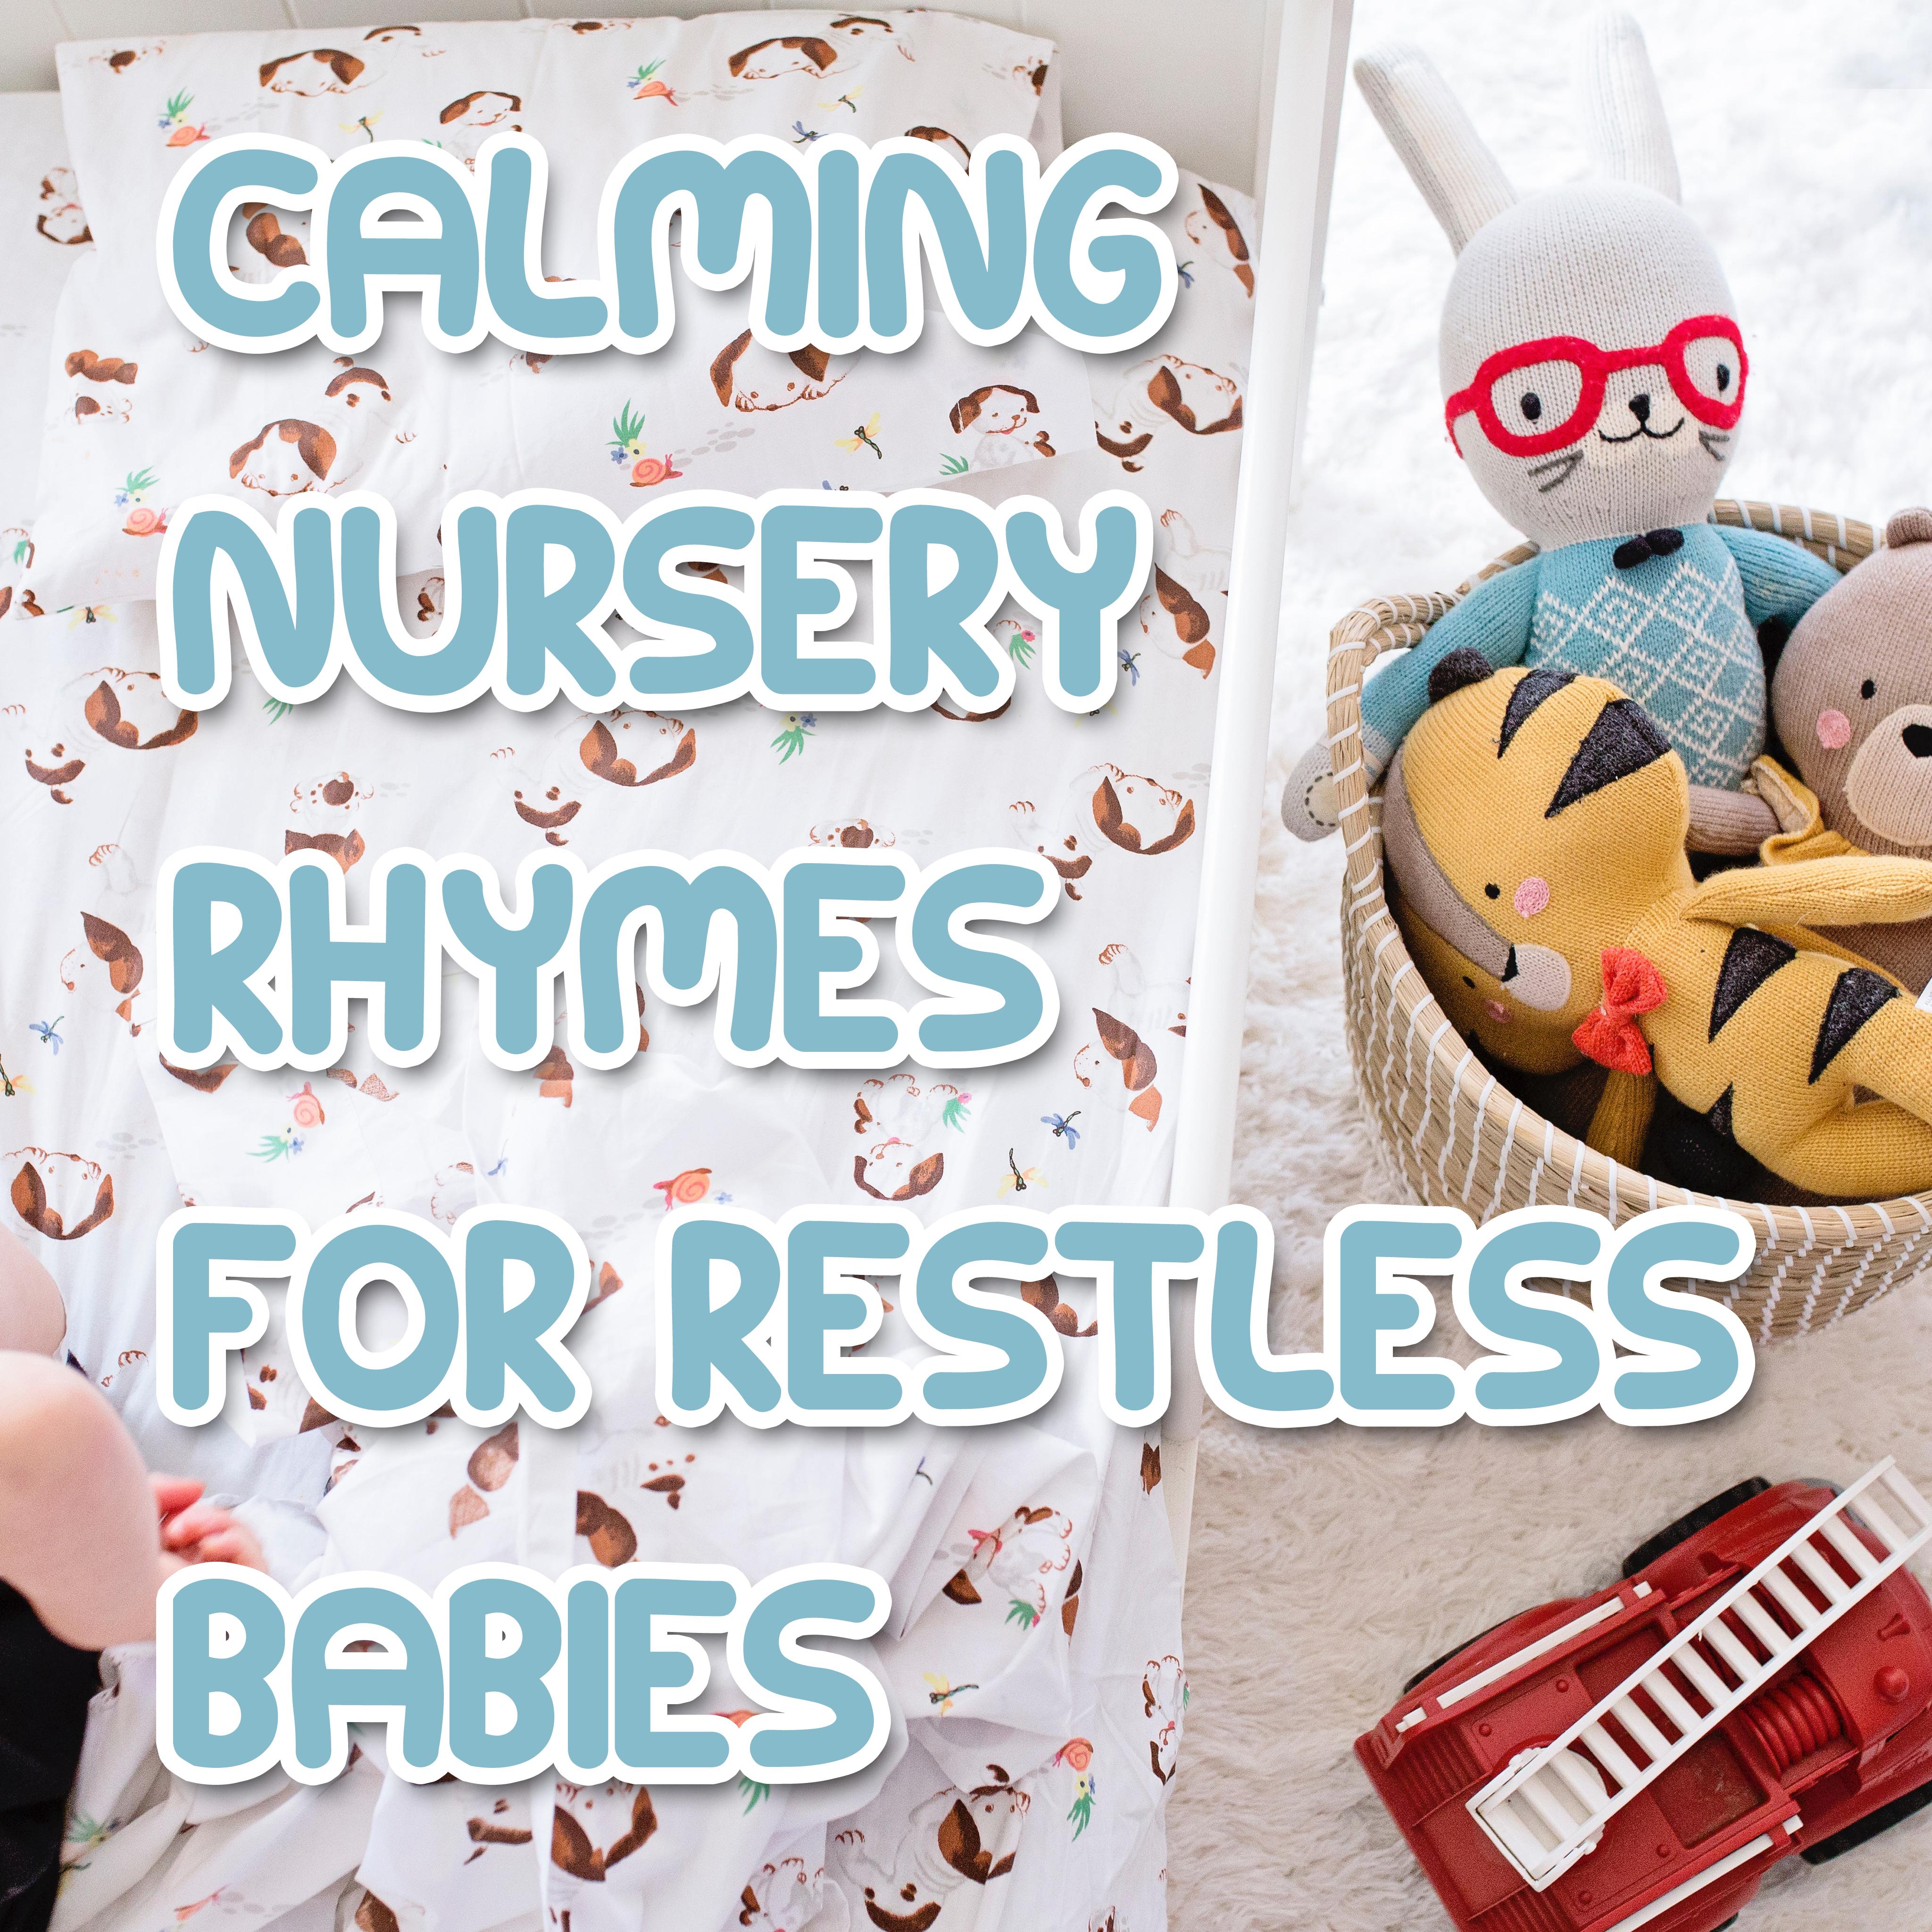 12 Calming Nursery Rhymes for Restless Babies